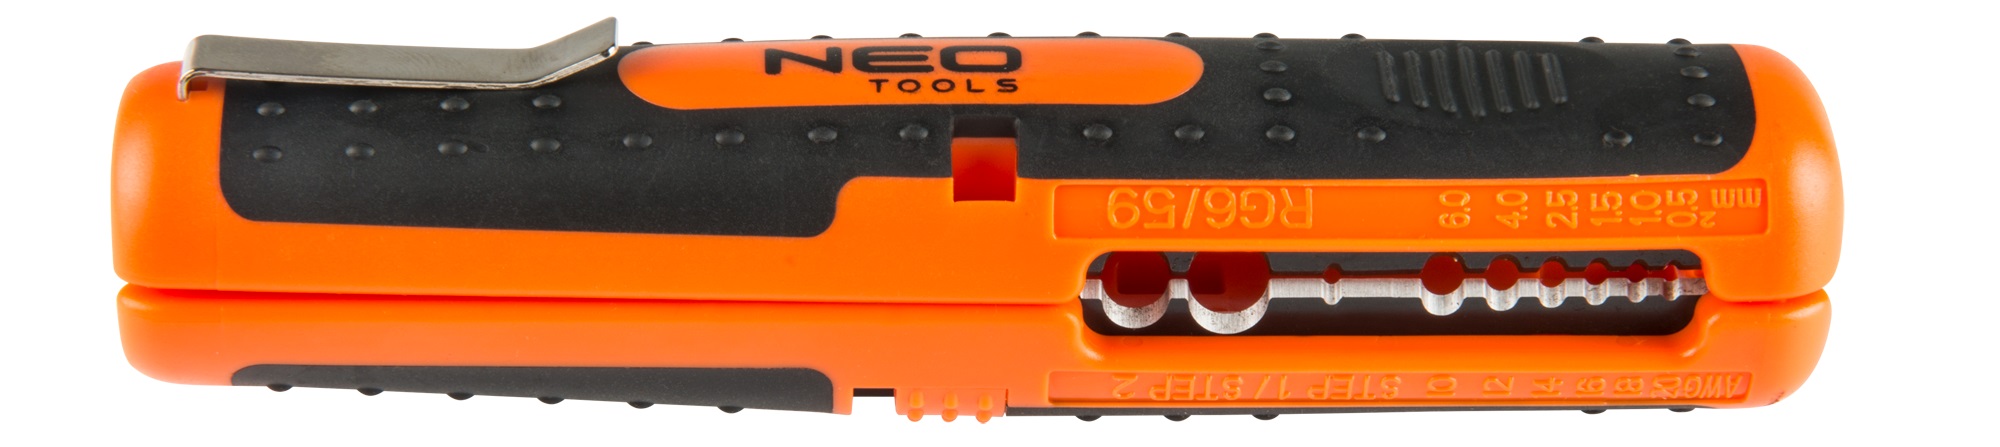 Съемник изоляции Neo Tools 01-524 в интернет-магазине, главное фото